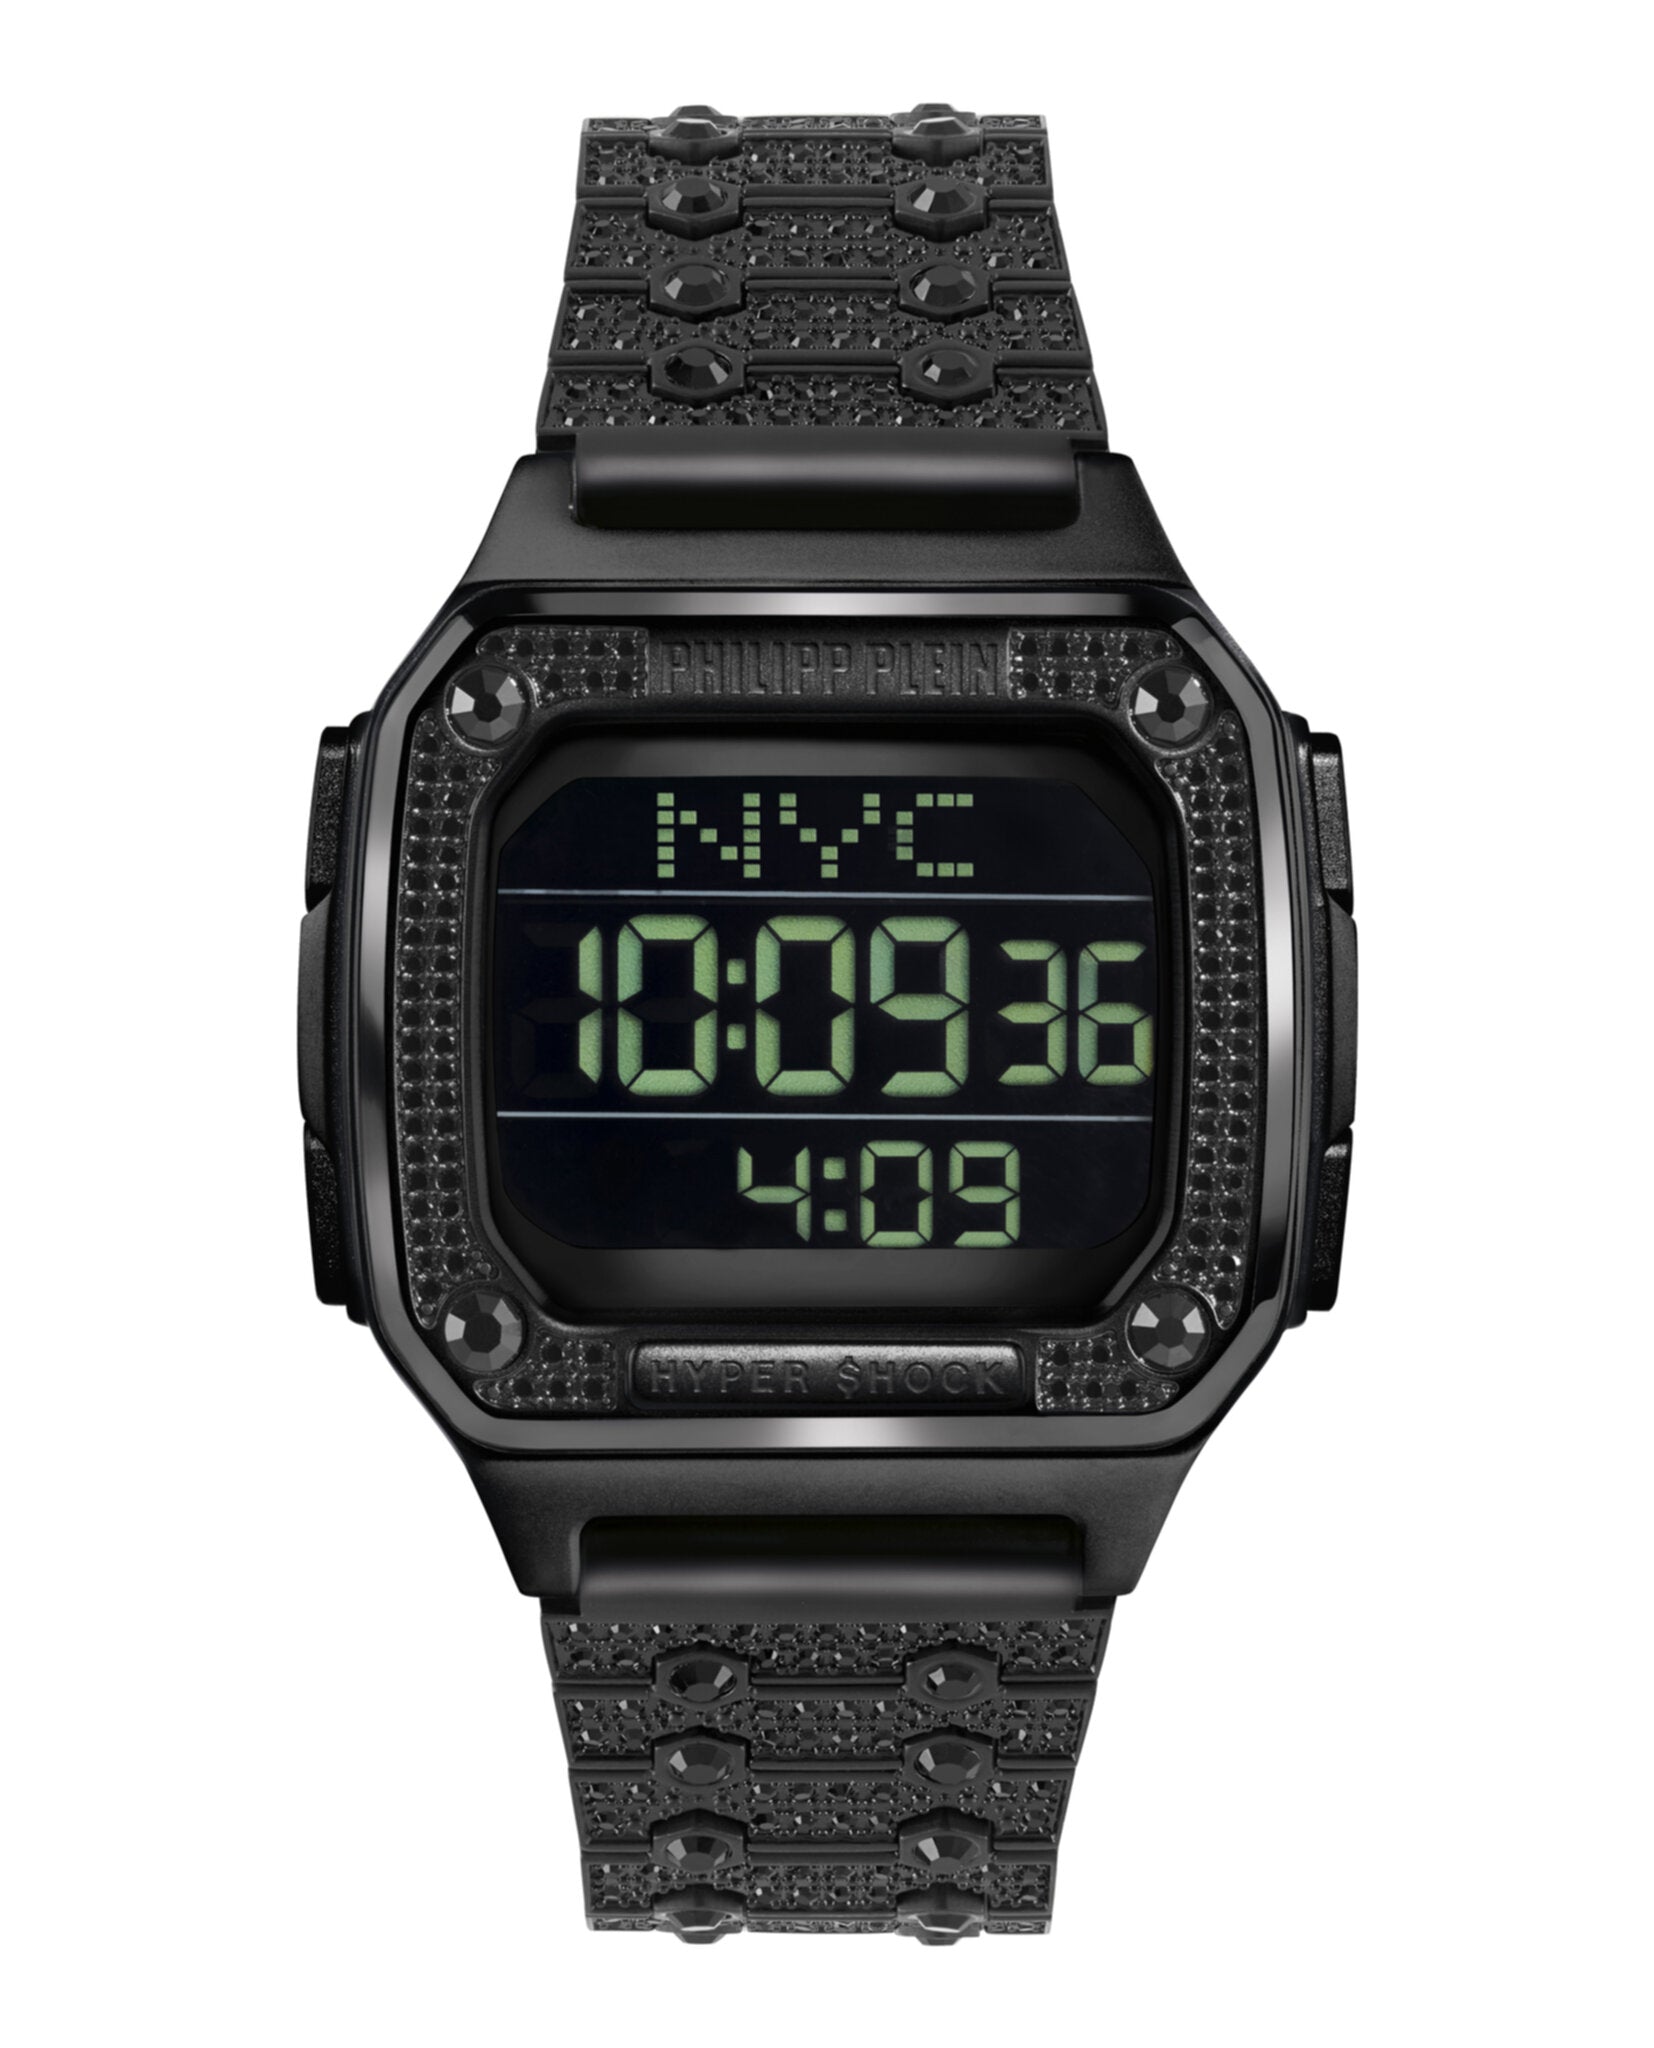 Hyper $hock Crystal Digital Watch